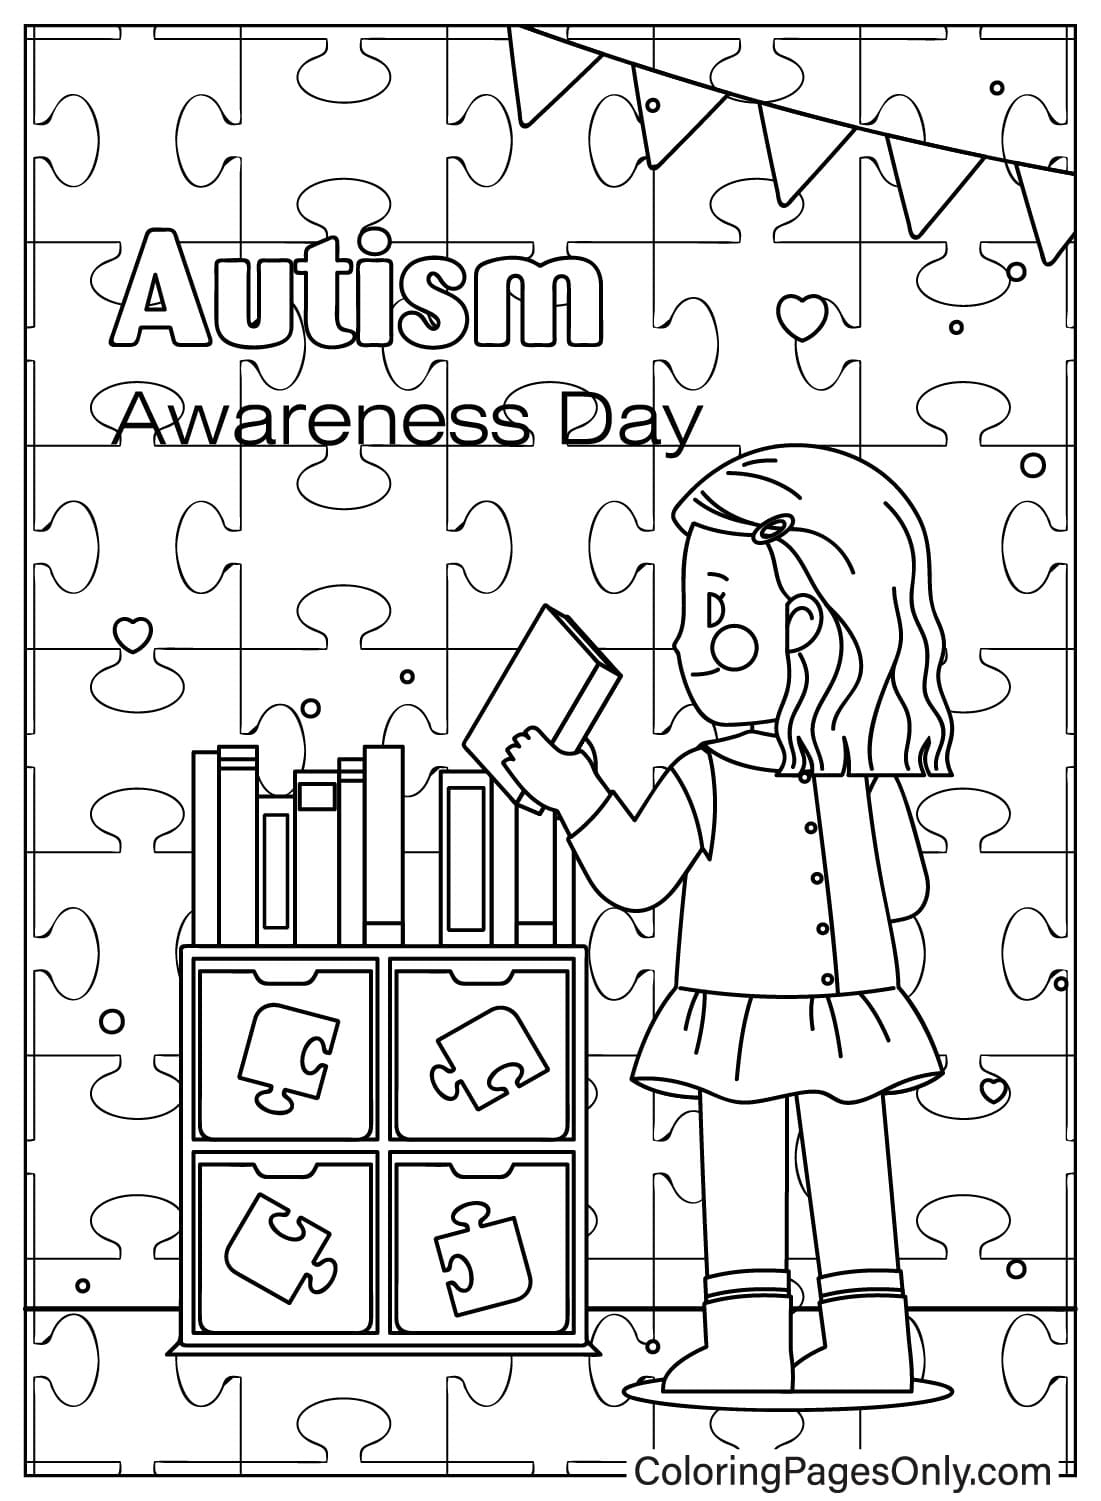 Página para colorir de conscientização sobre o autismo para crianças do Dia Mundial de Conscientização sobre o Autismo